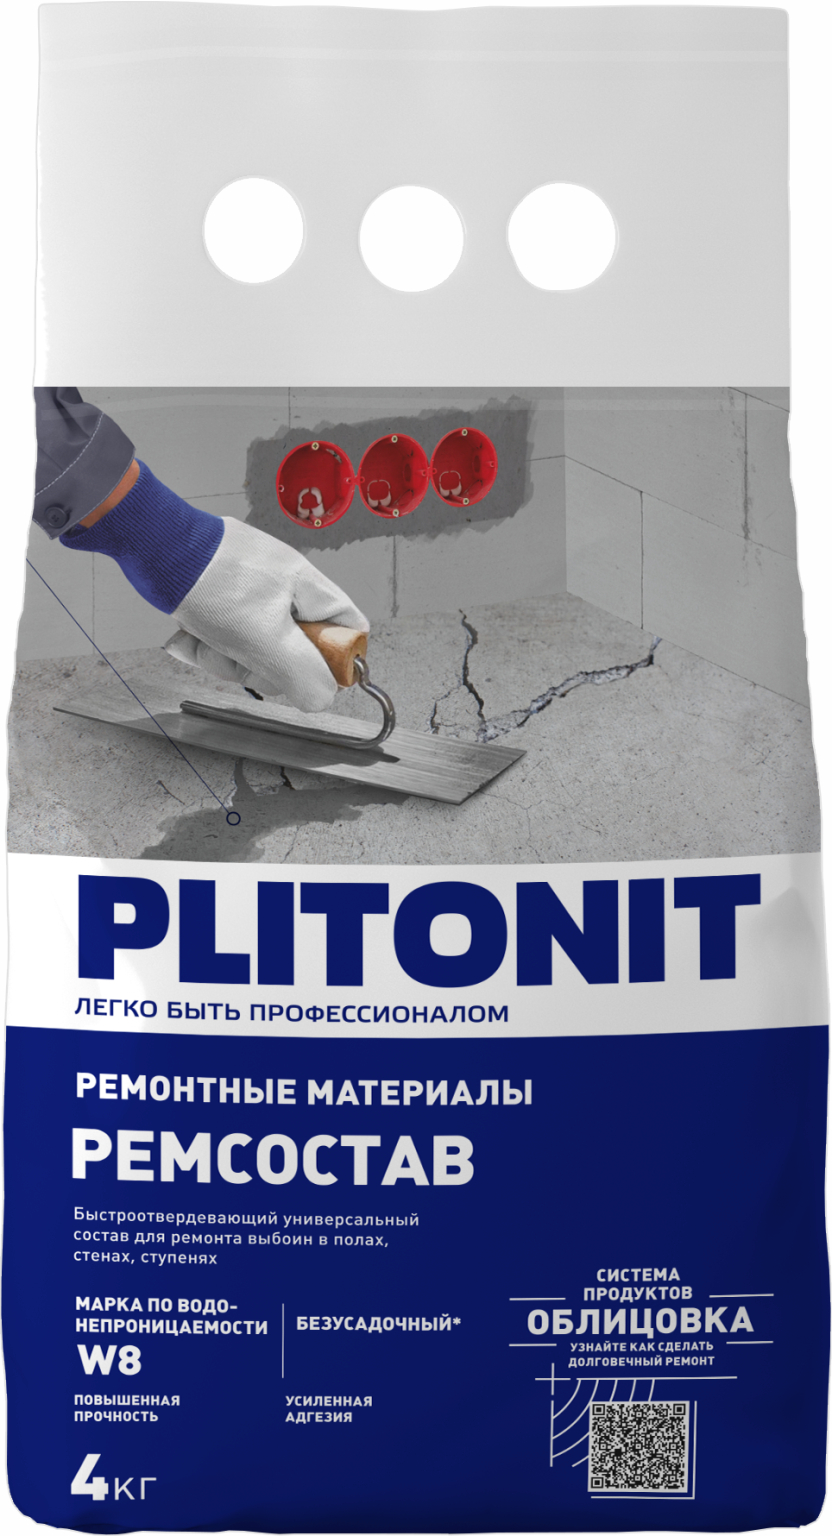 PLITONIT РемСостав -4 универсальный 4 кг  (224шт/подд.)